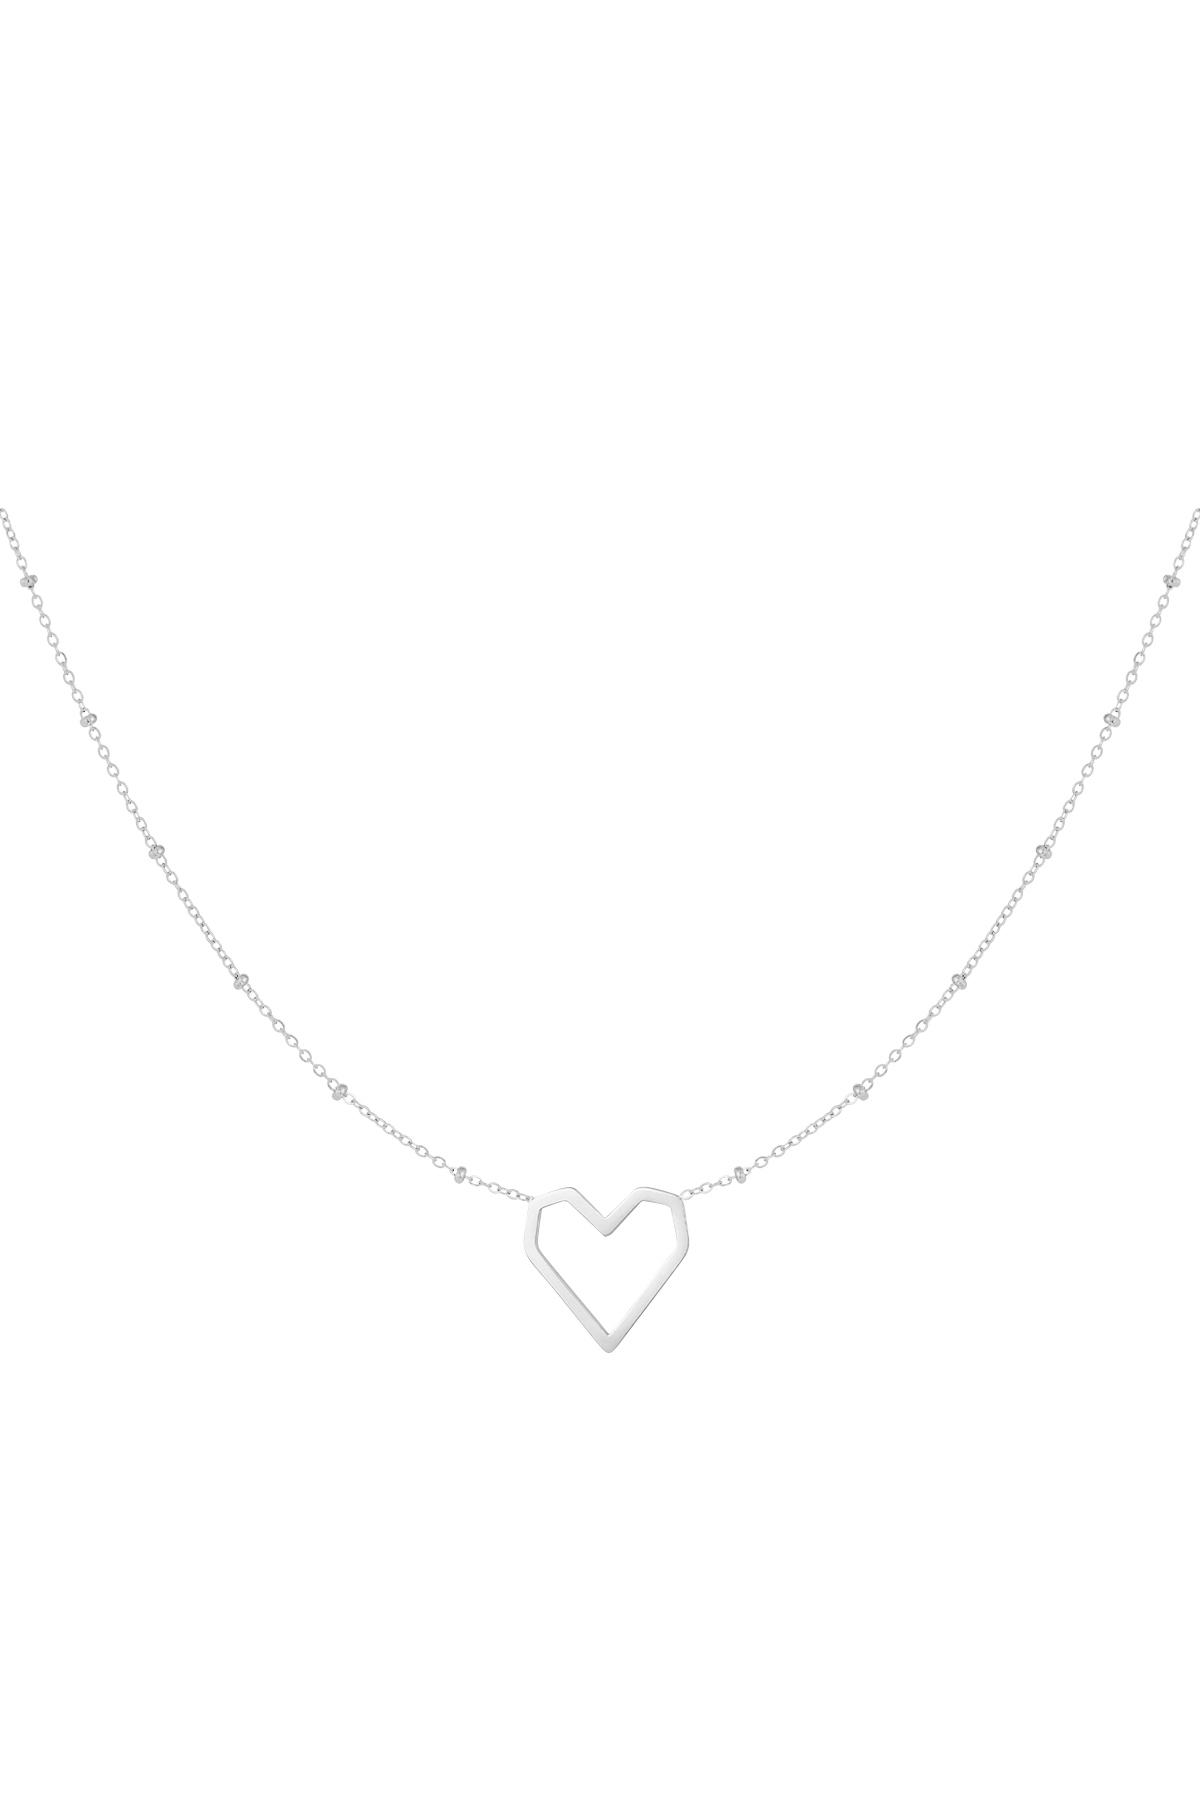 Halskette Herz mit Punkten - Silber